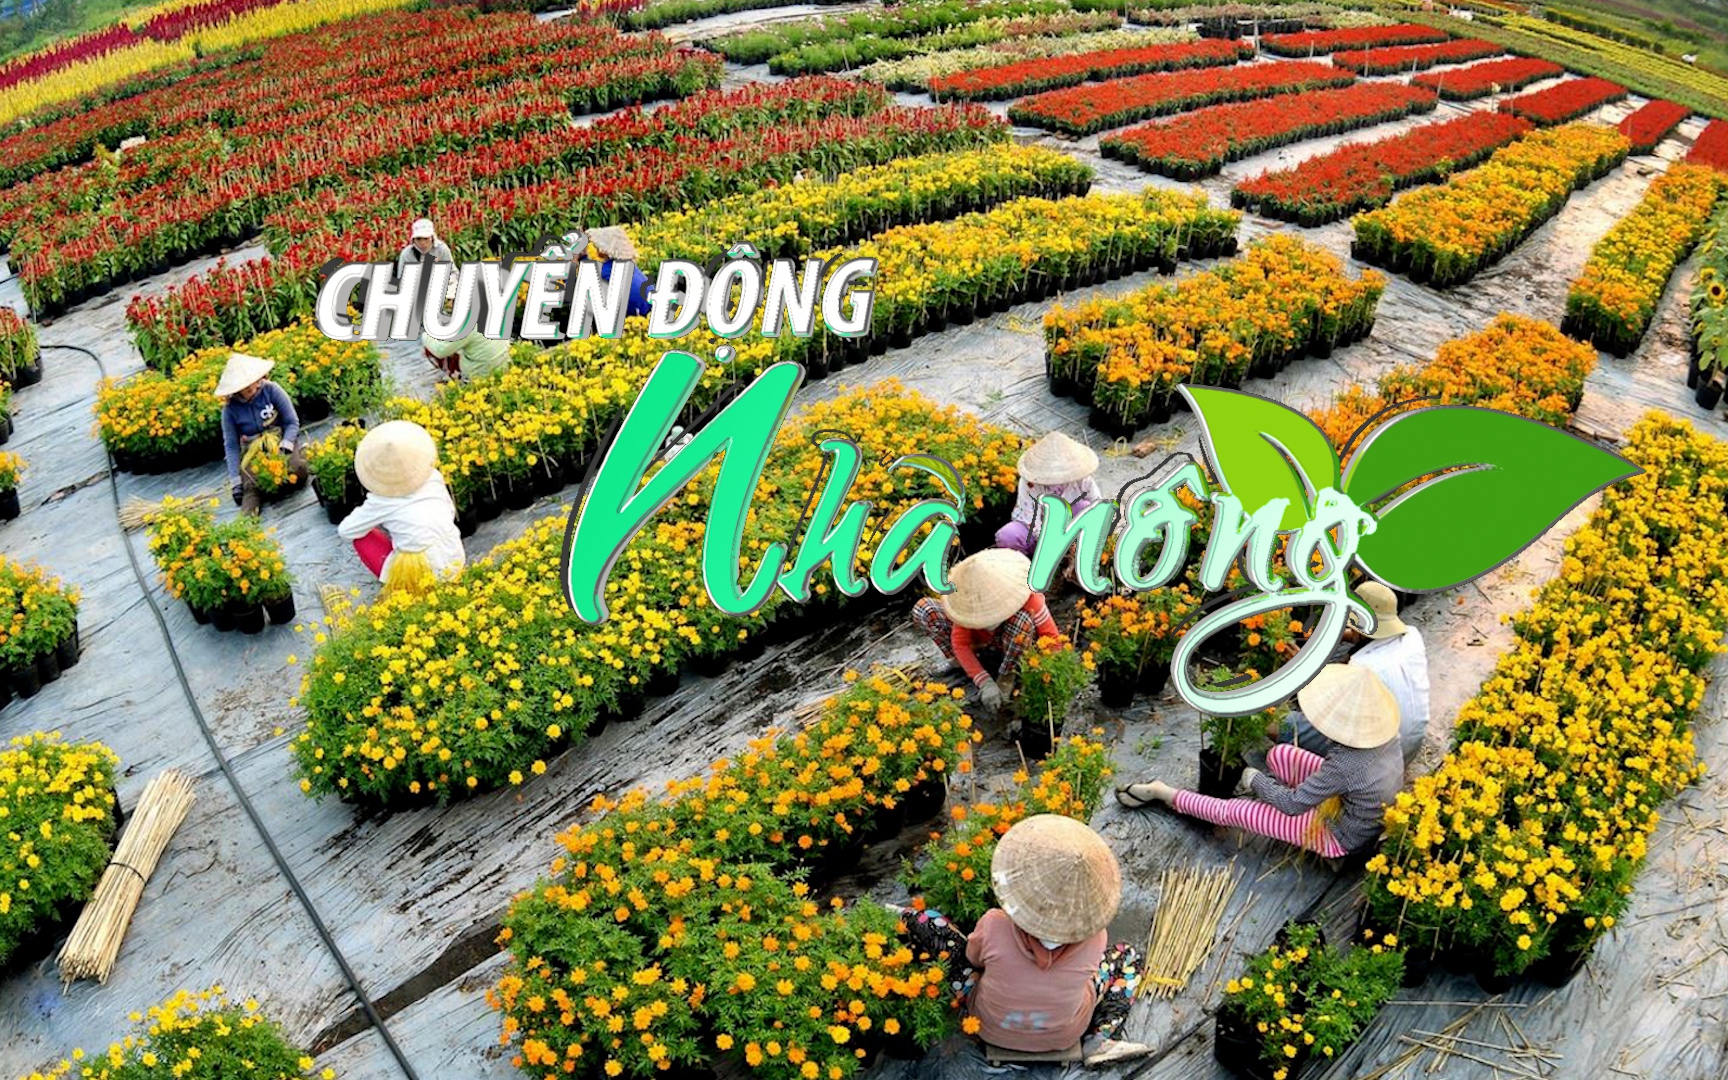 Chuyển động Nhà nông 31/12: Festival hoa kiểng Sa Đéc - dáng vóc của một thành phố hoa